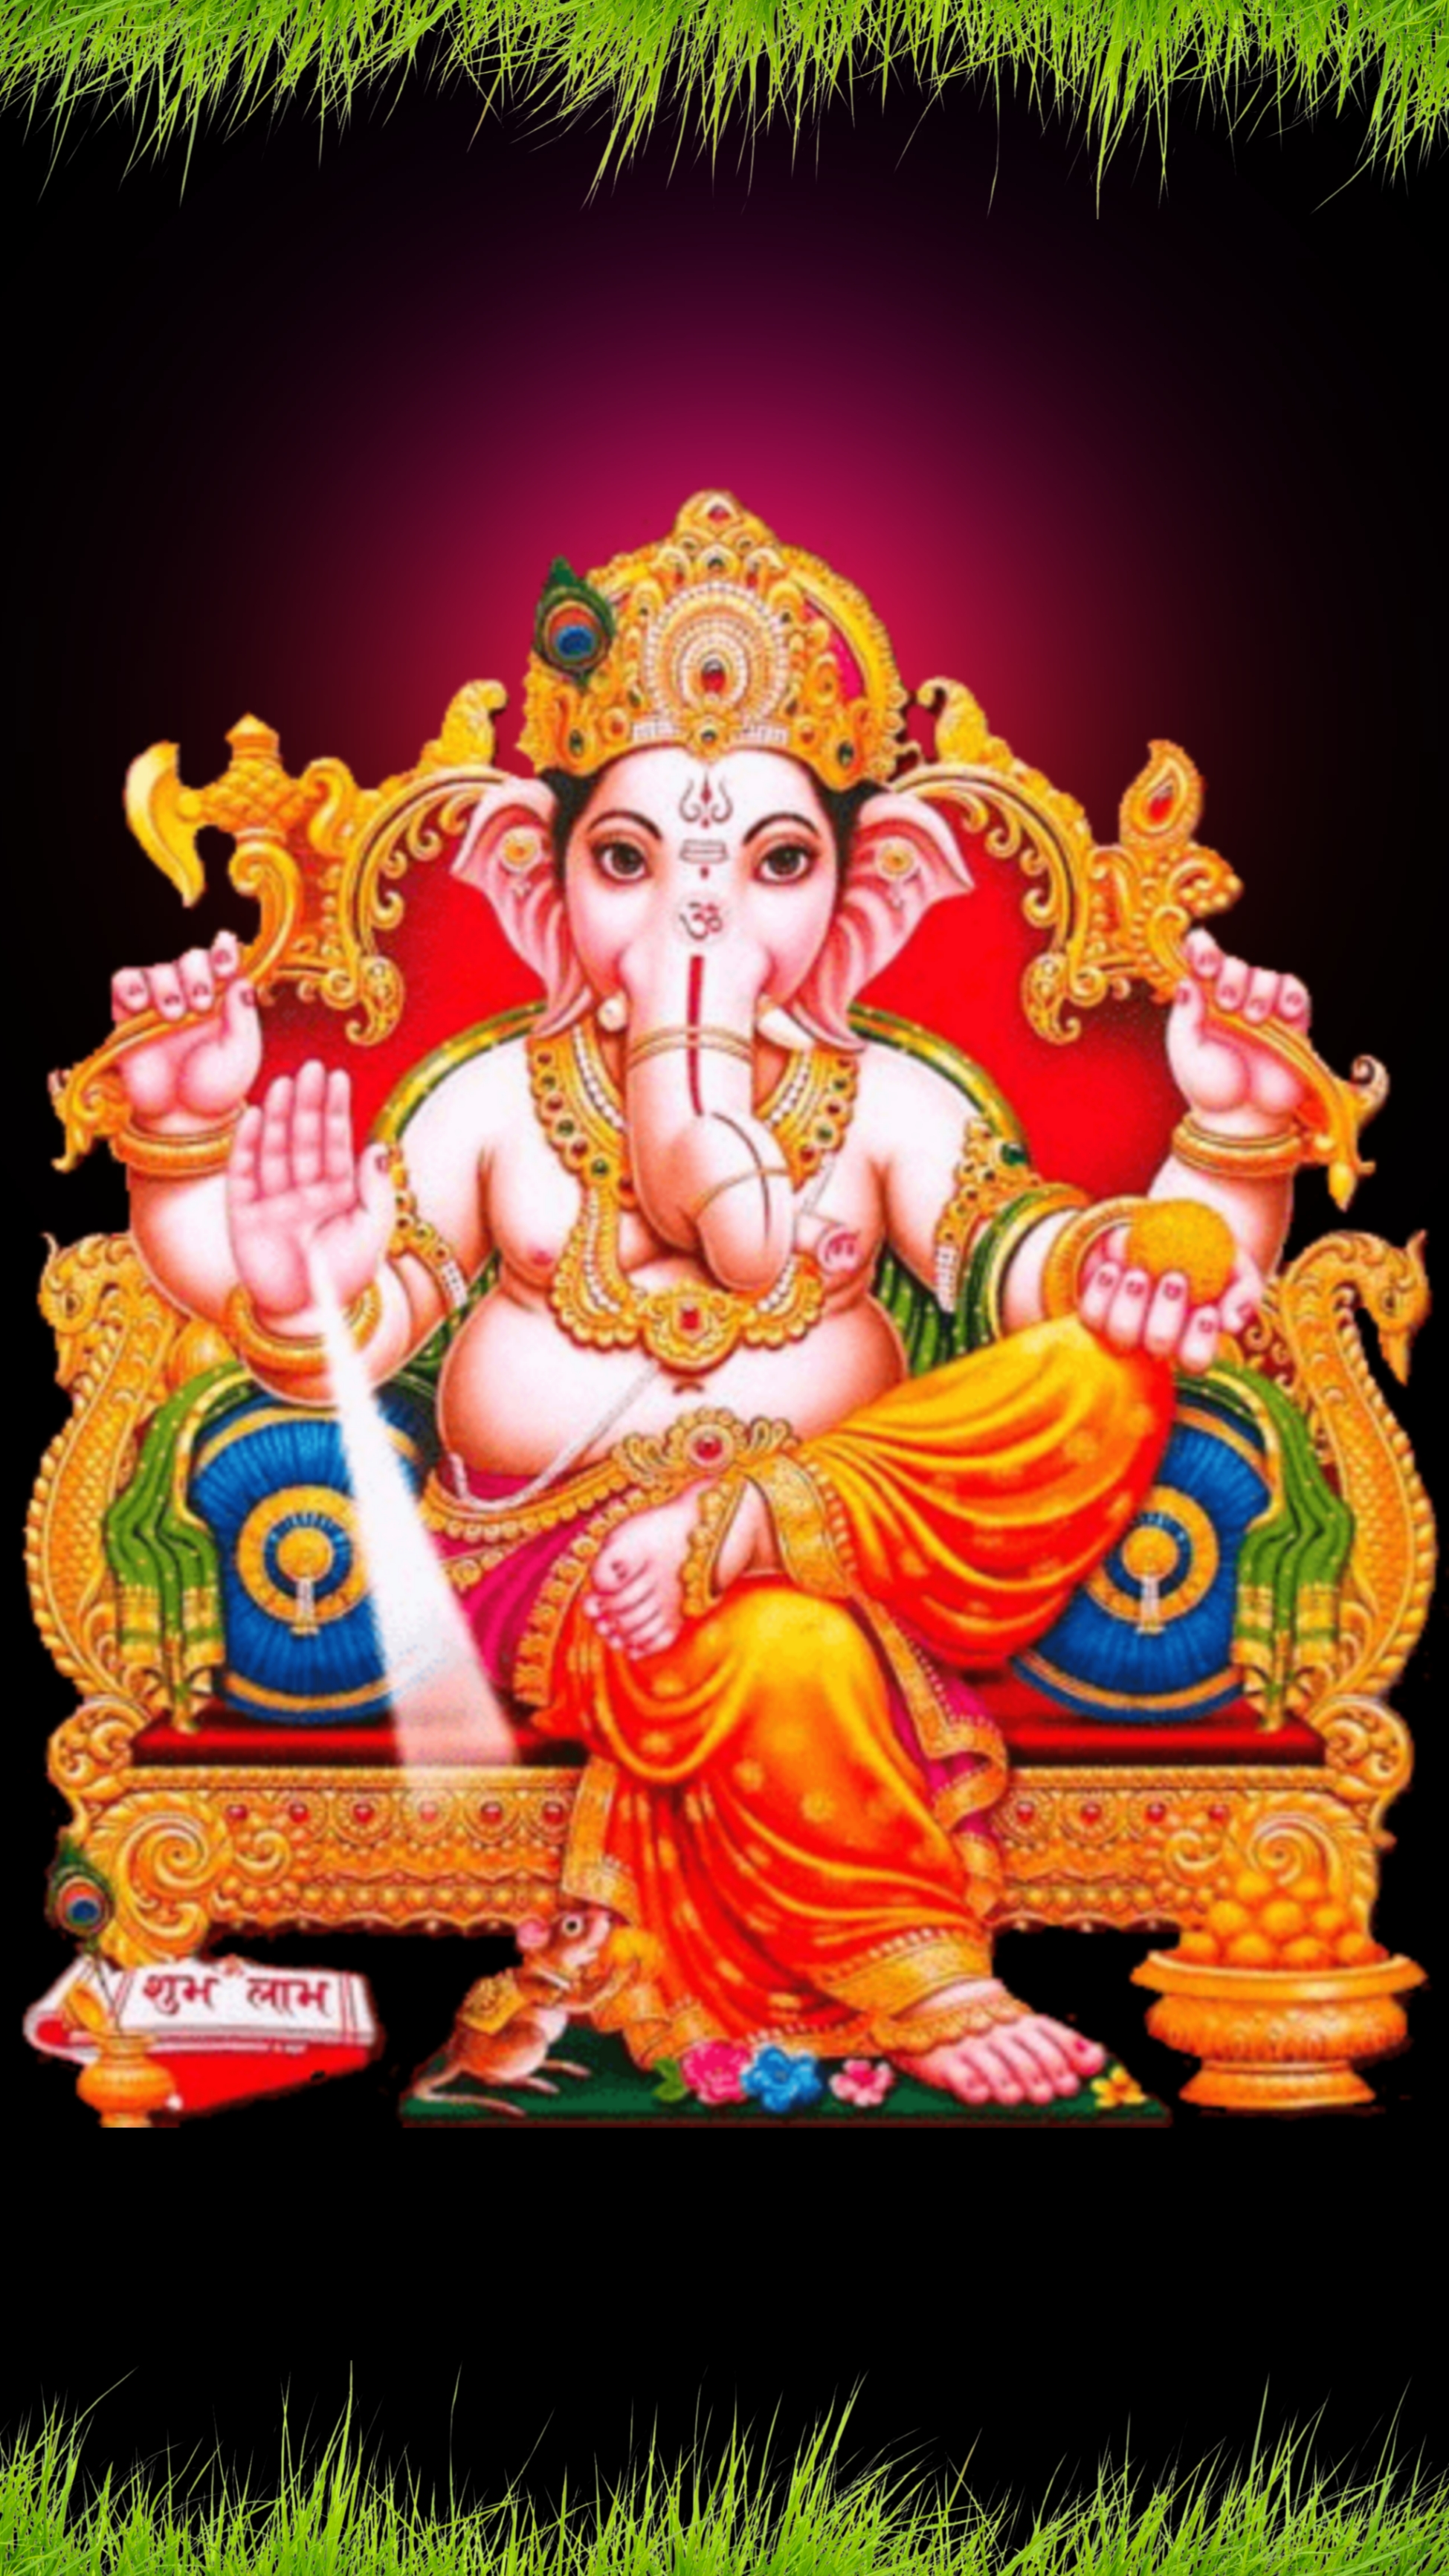 गणेश जी वॉलपेपर  Ganesh ji Wallpapers for mobile phones | Best Ganesha wallpapers for mobile download  Sri Ganesh ji 4k wallpaper for mobile